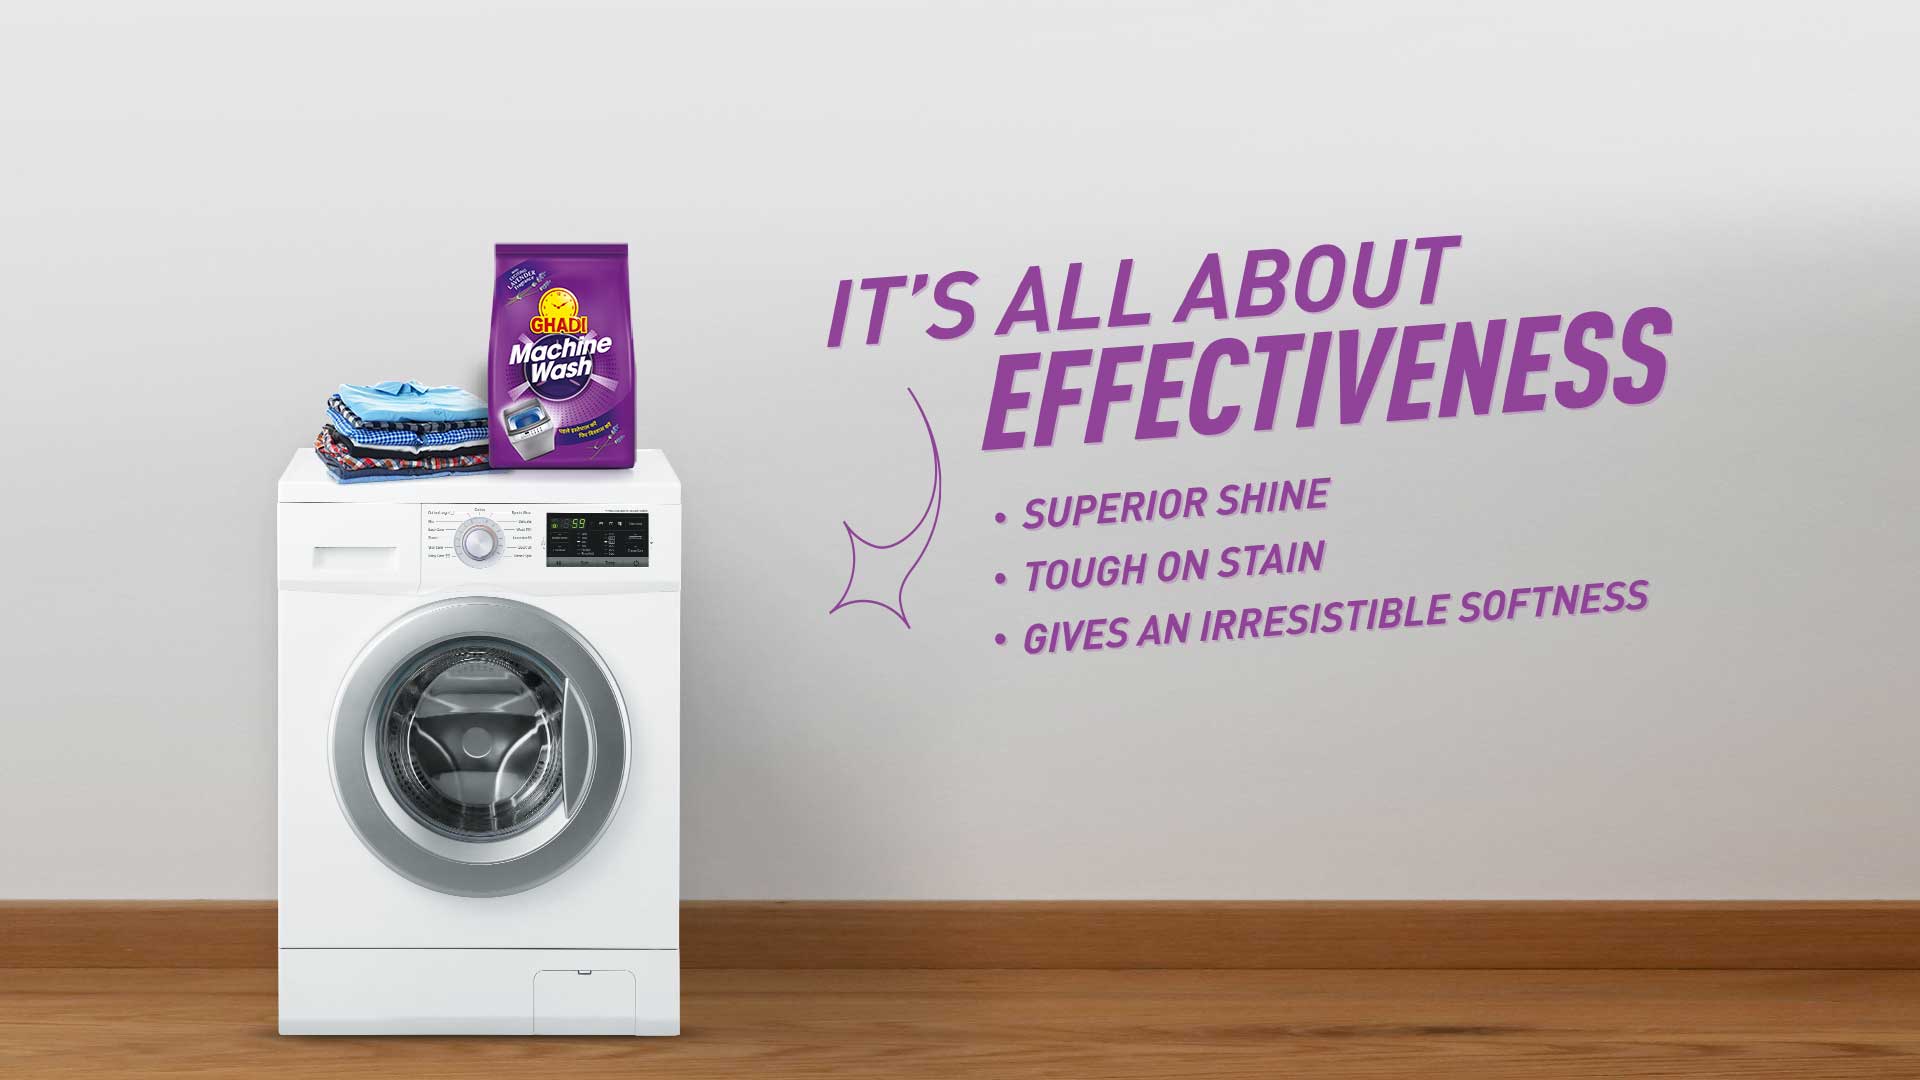 lavender detergent, ghadi machine wash